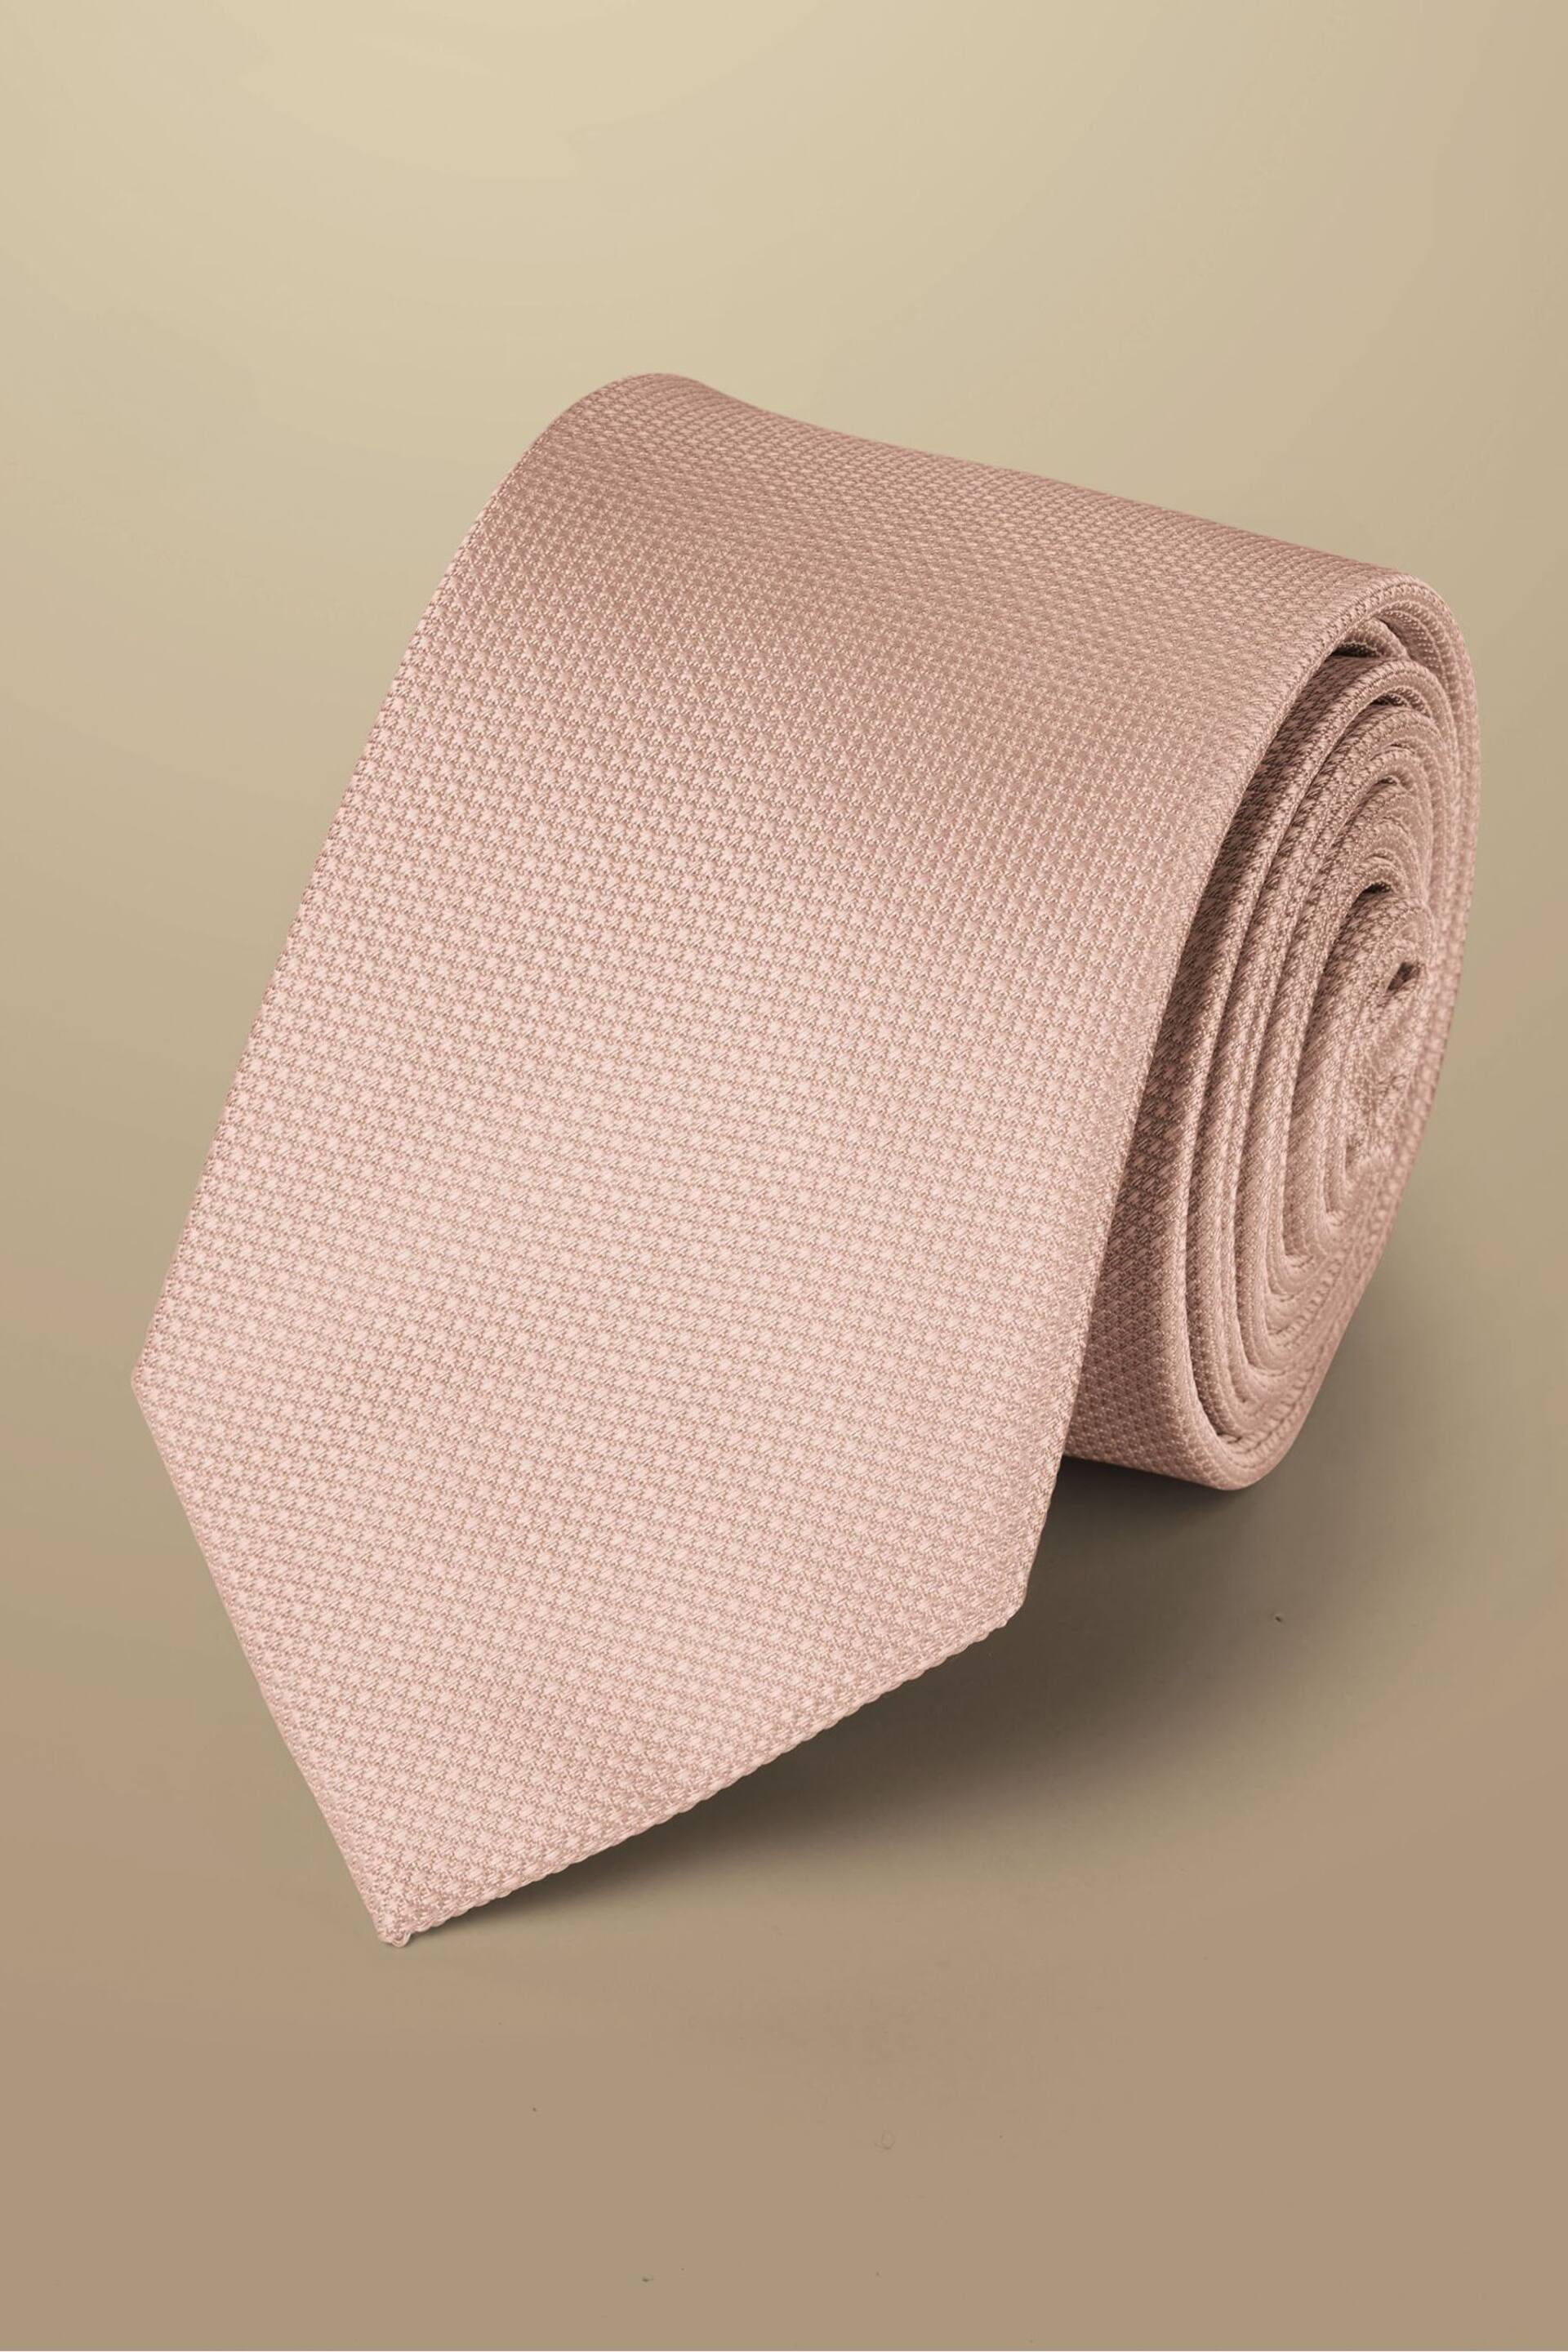 Charles Tyrwhitt Pink Silk Stain Resist Tie - Image 1 of 2